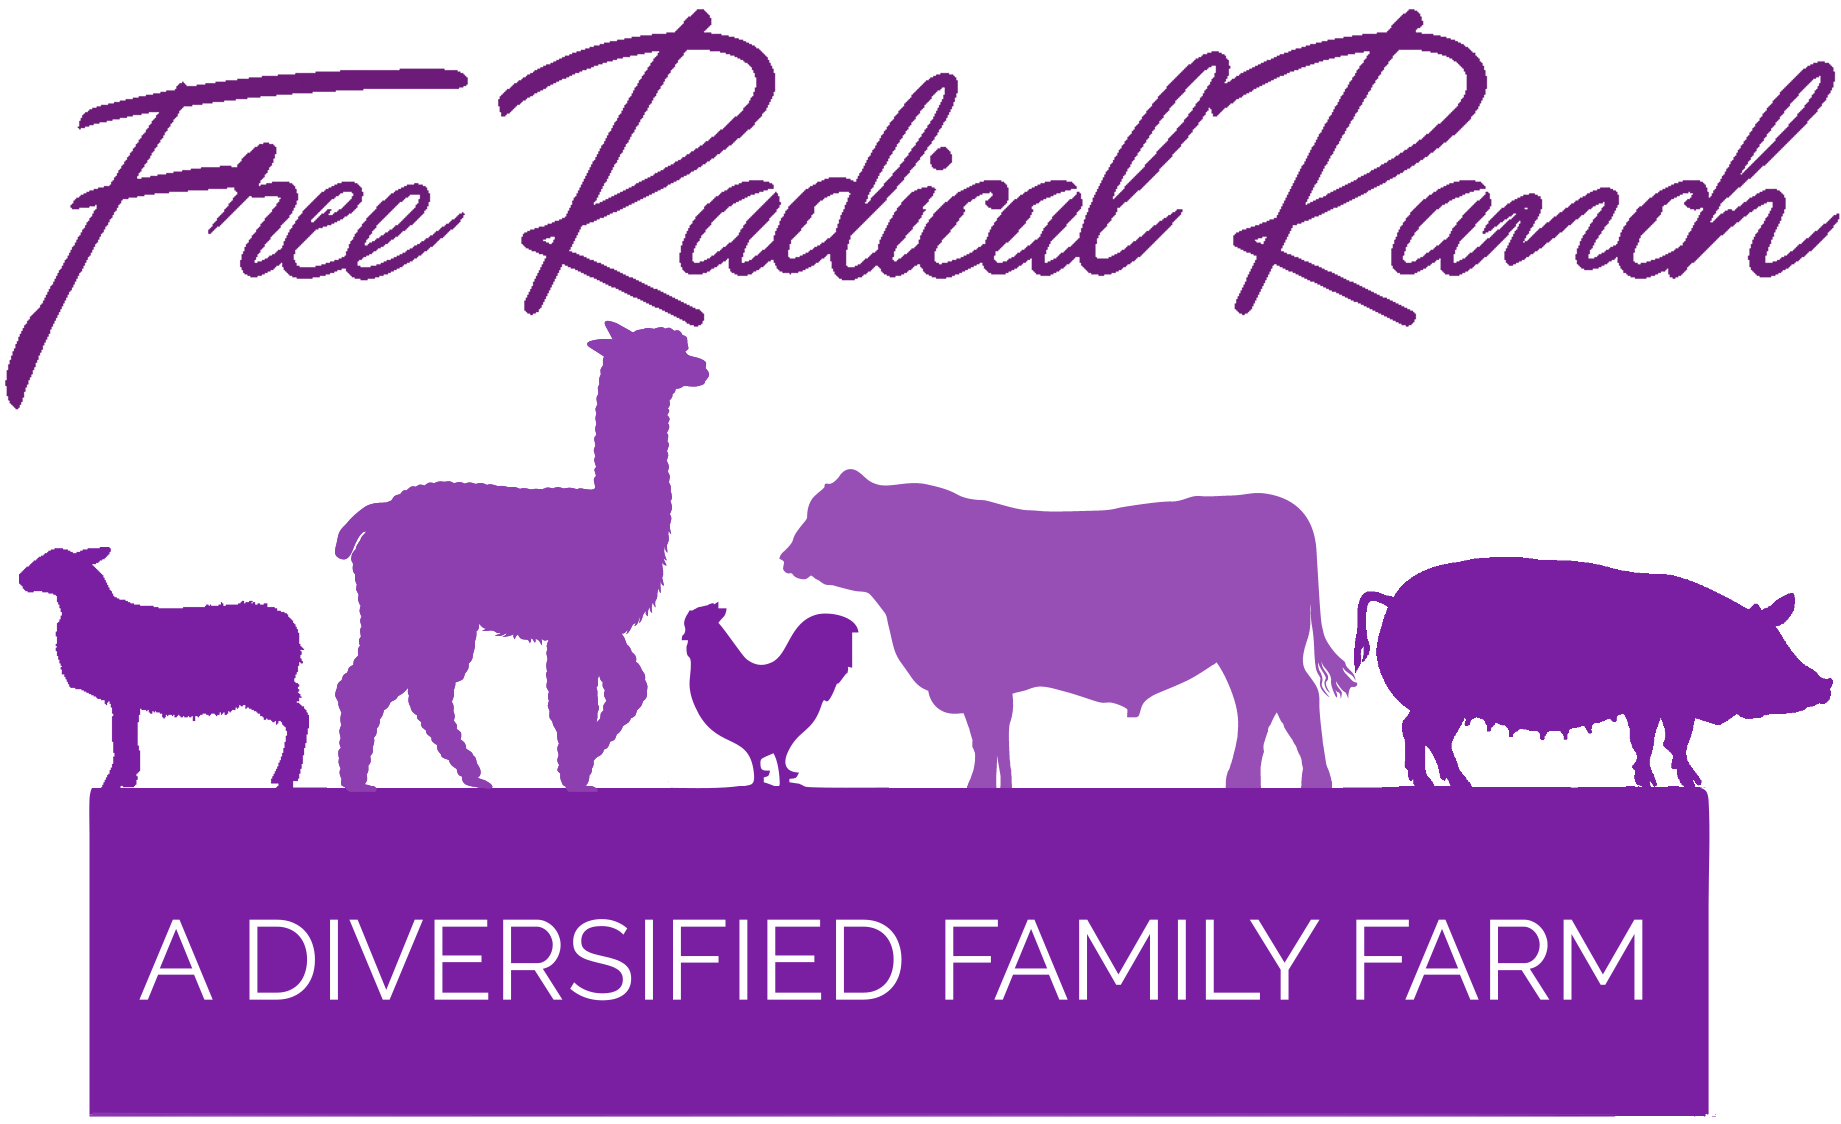 Free Radical Ranch